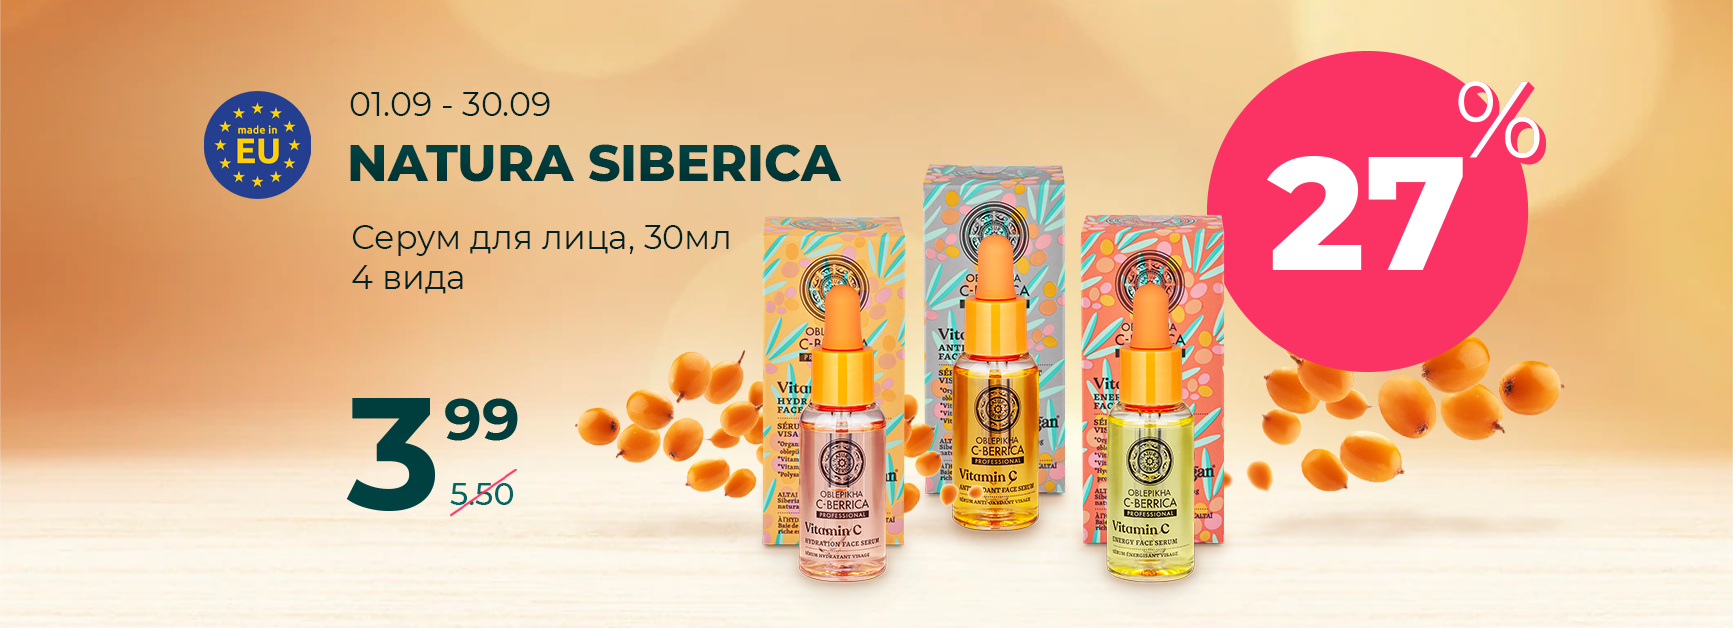 Natura Siberica serumi 01.09.-30.09.